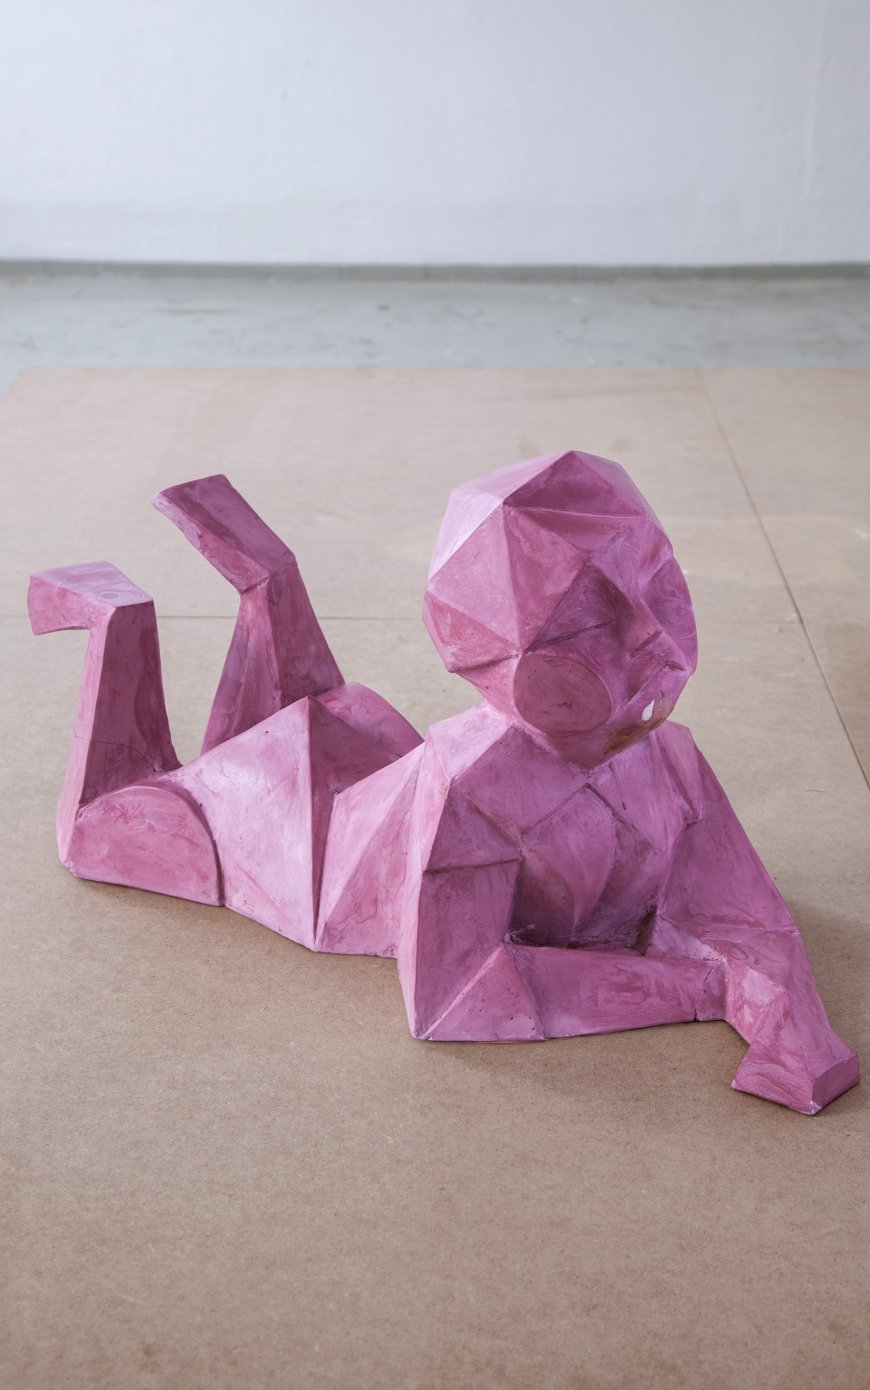 Niclas Riepshoff, Skulpturen des 20. Juni, 2018, Ausstellungsansicht, fAN Kunstverein (Im Rahmen des Austellungformats "Seasons"), Wien 